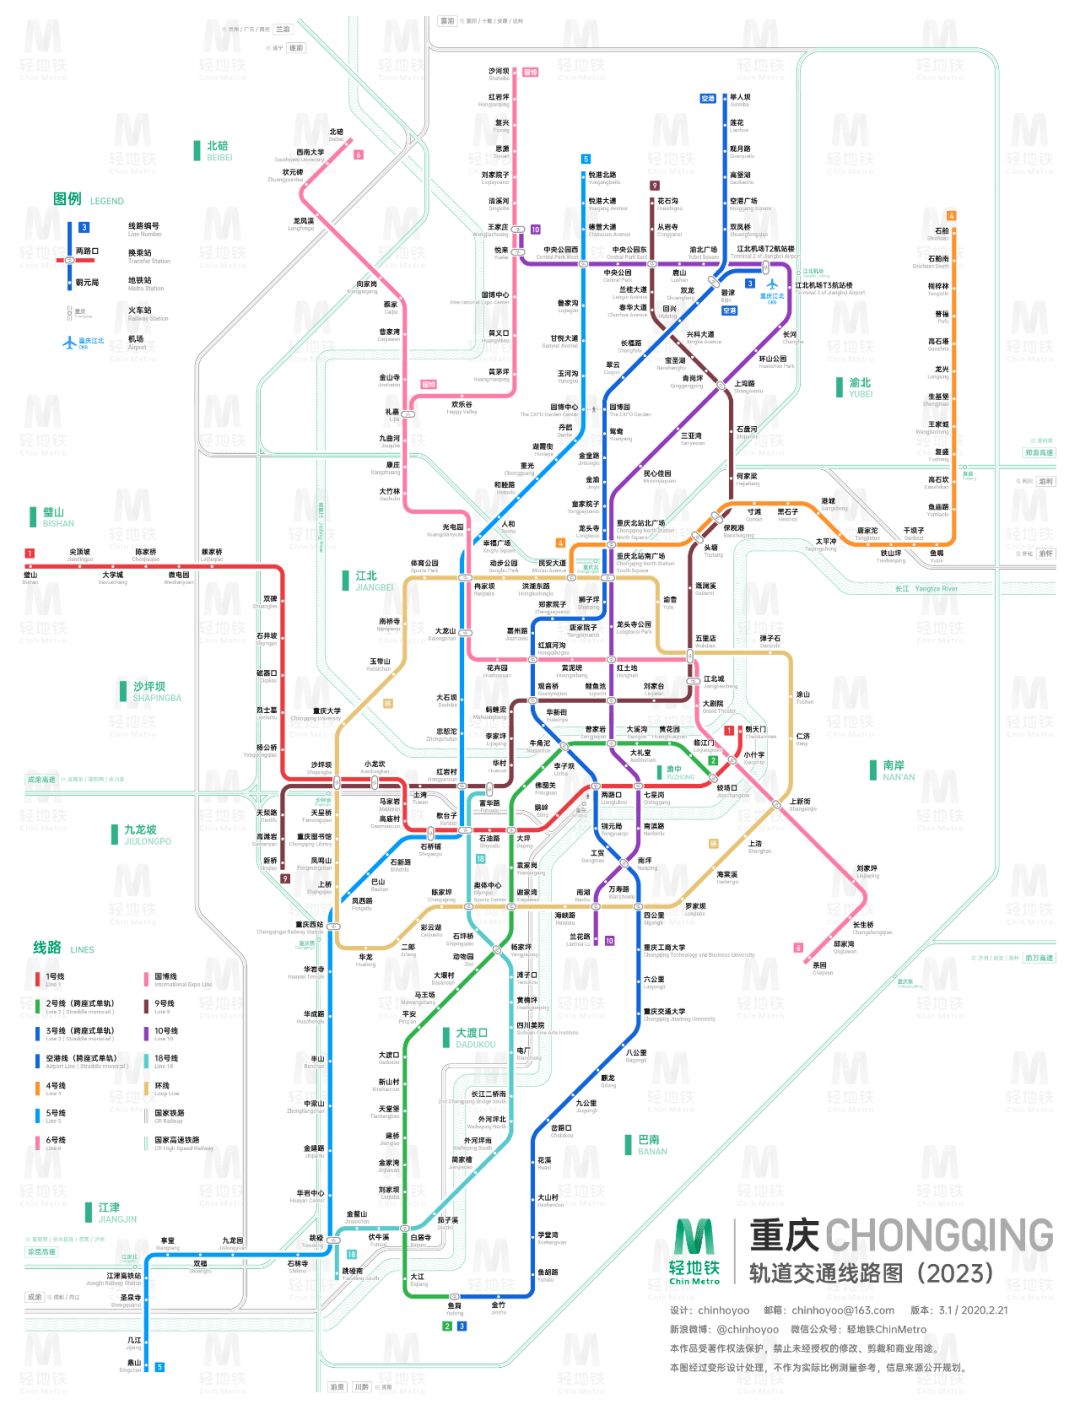 年12月,重庆轨道交通运营线路共有10条,包括1,2,3,4,5,6,10号线,环线